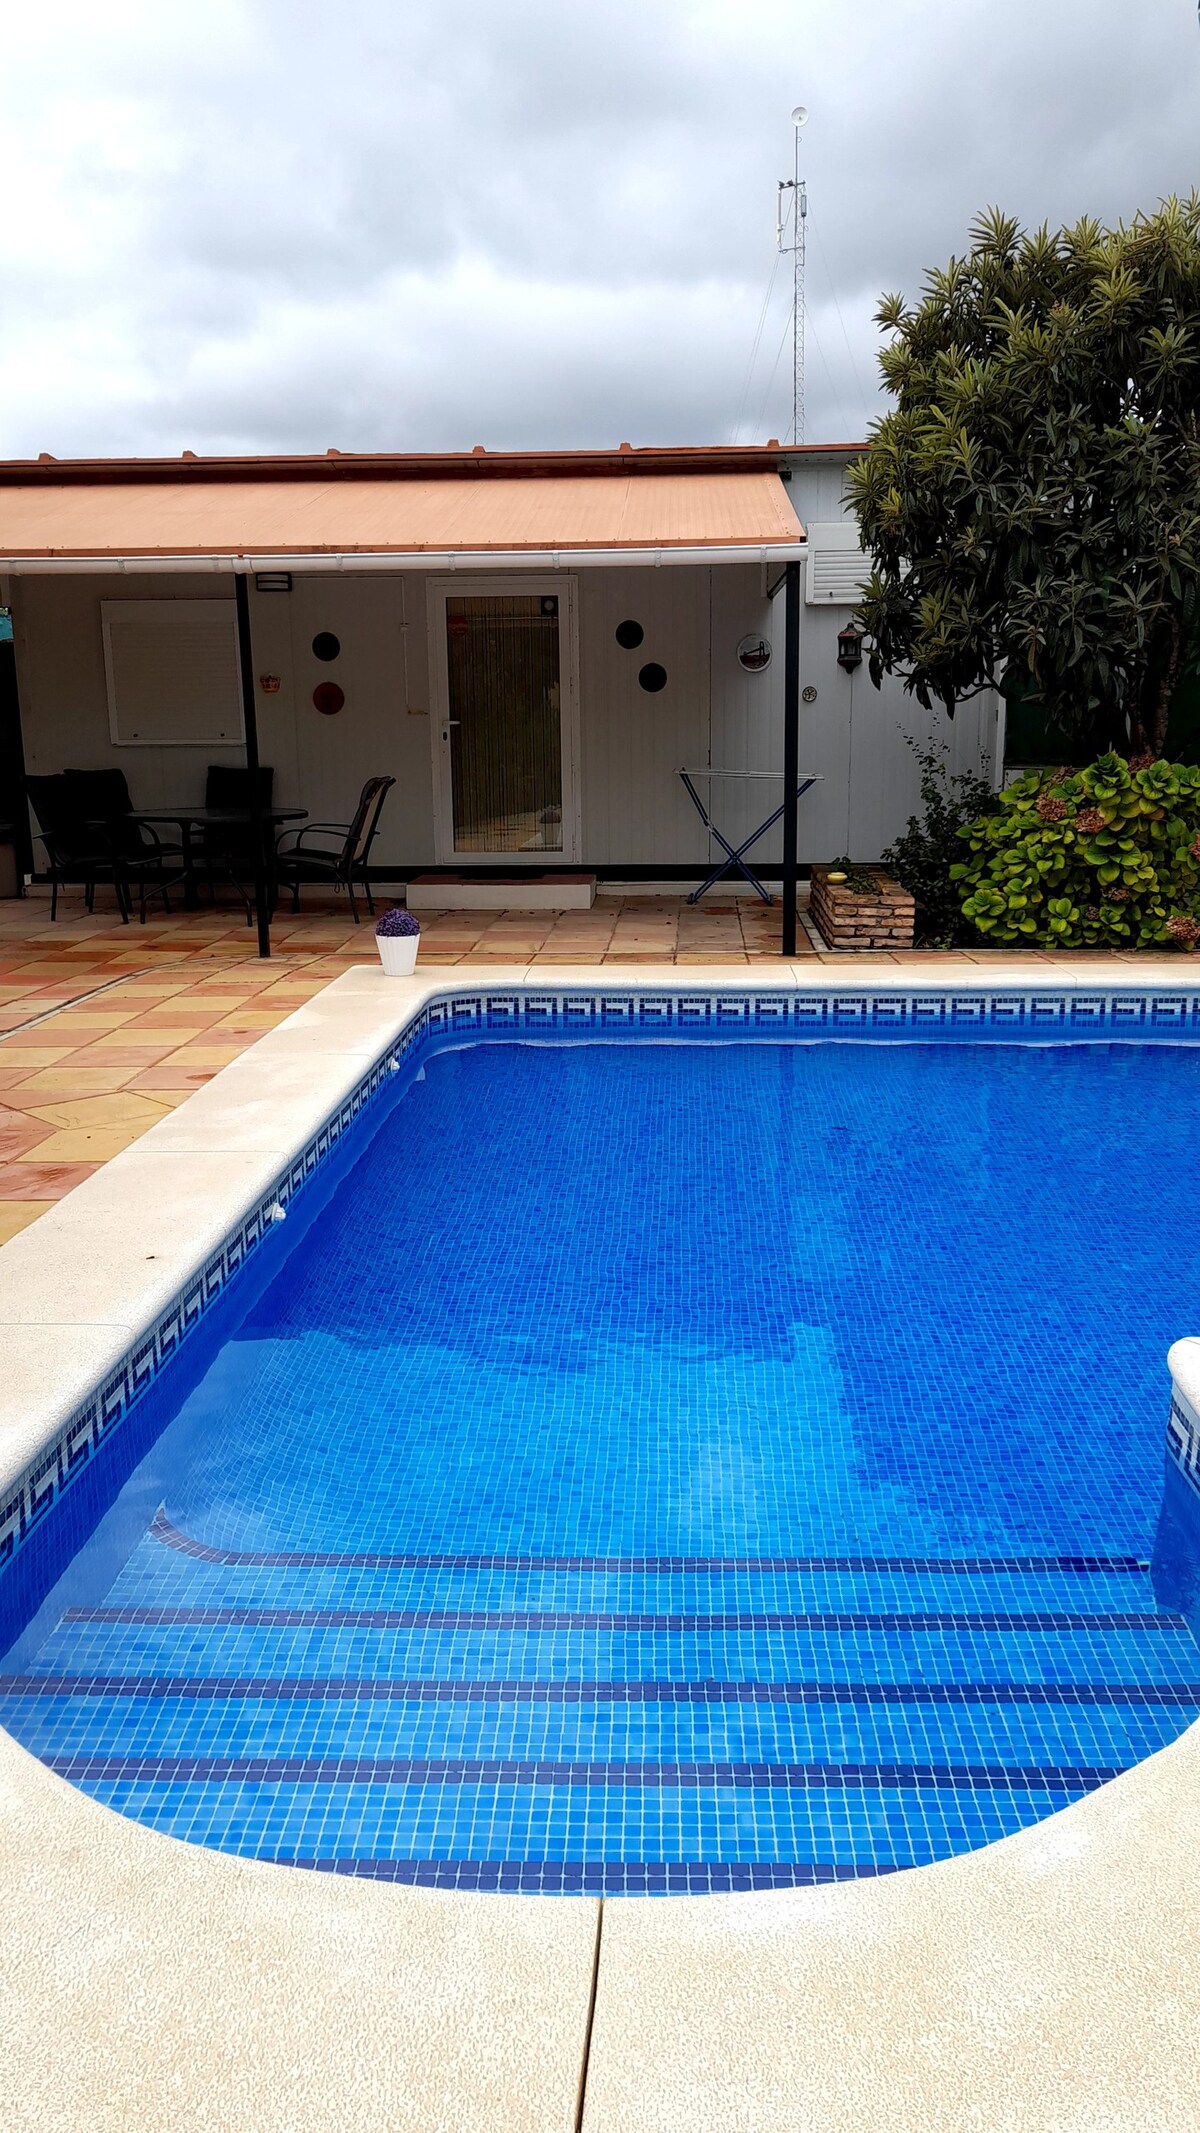 Acogedora casa de invitados con piscina y jardín